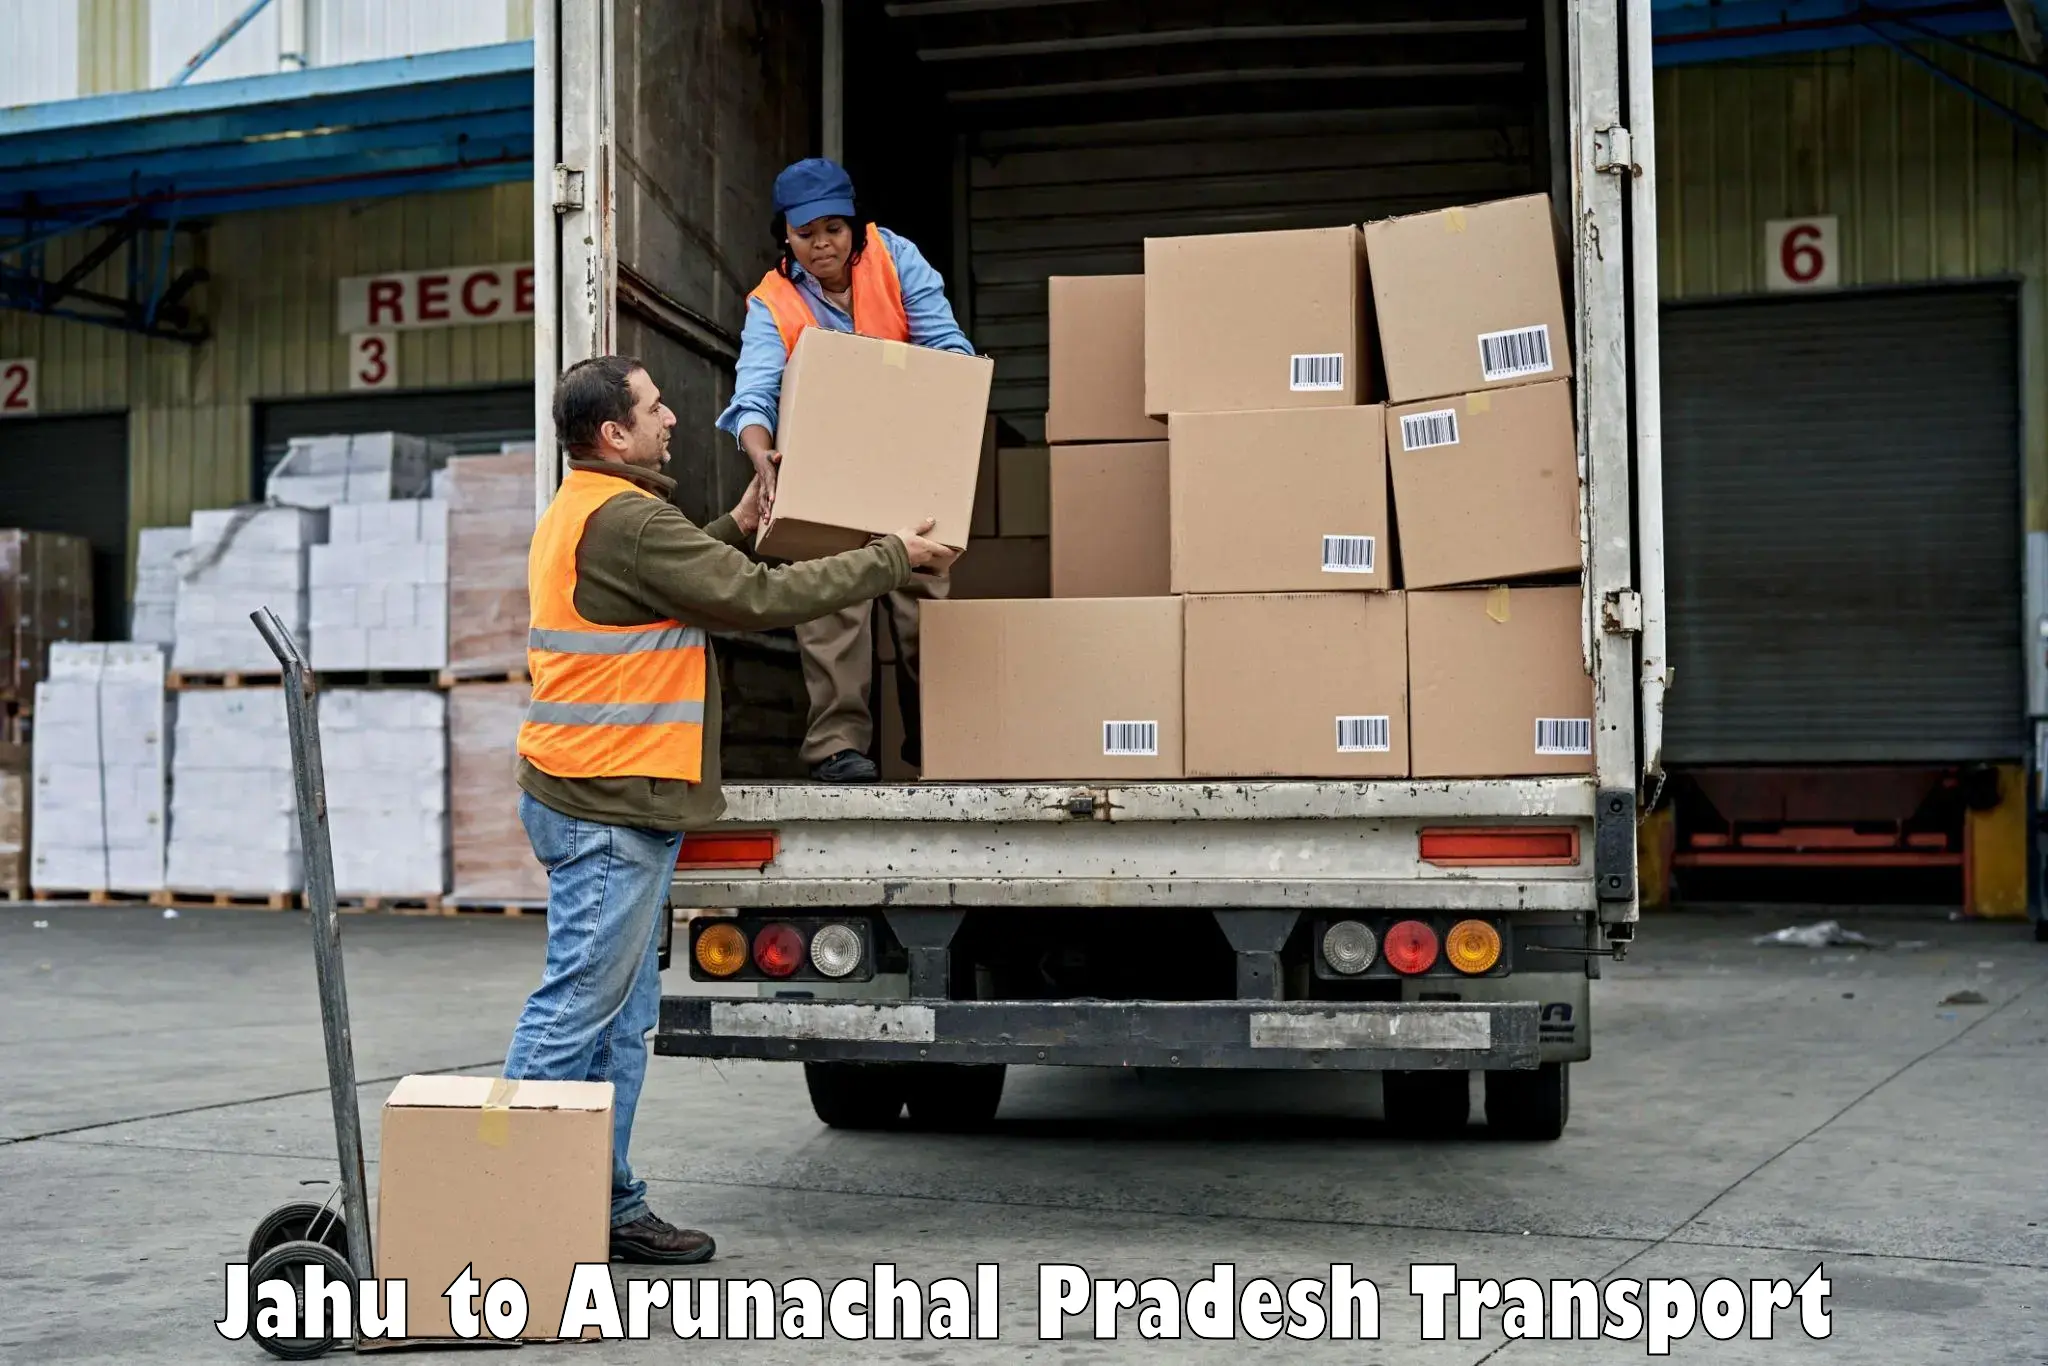 Truck transport companies in India Jahu to Tezu